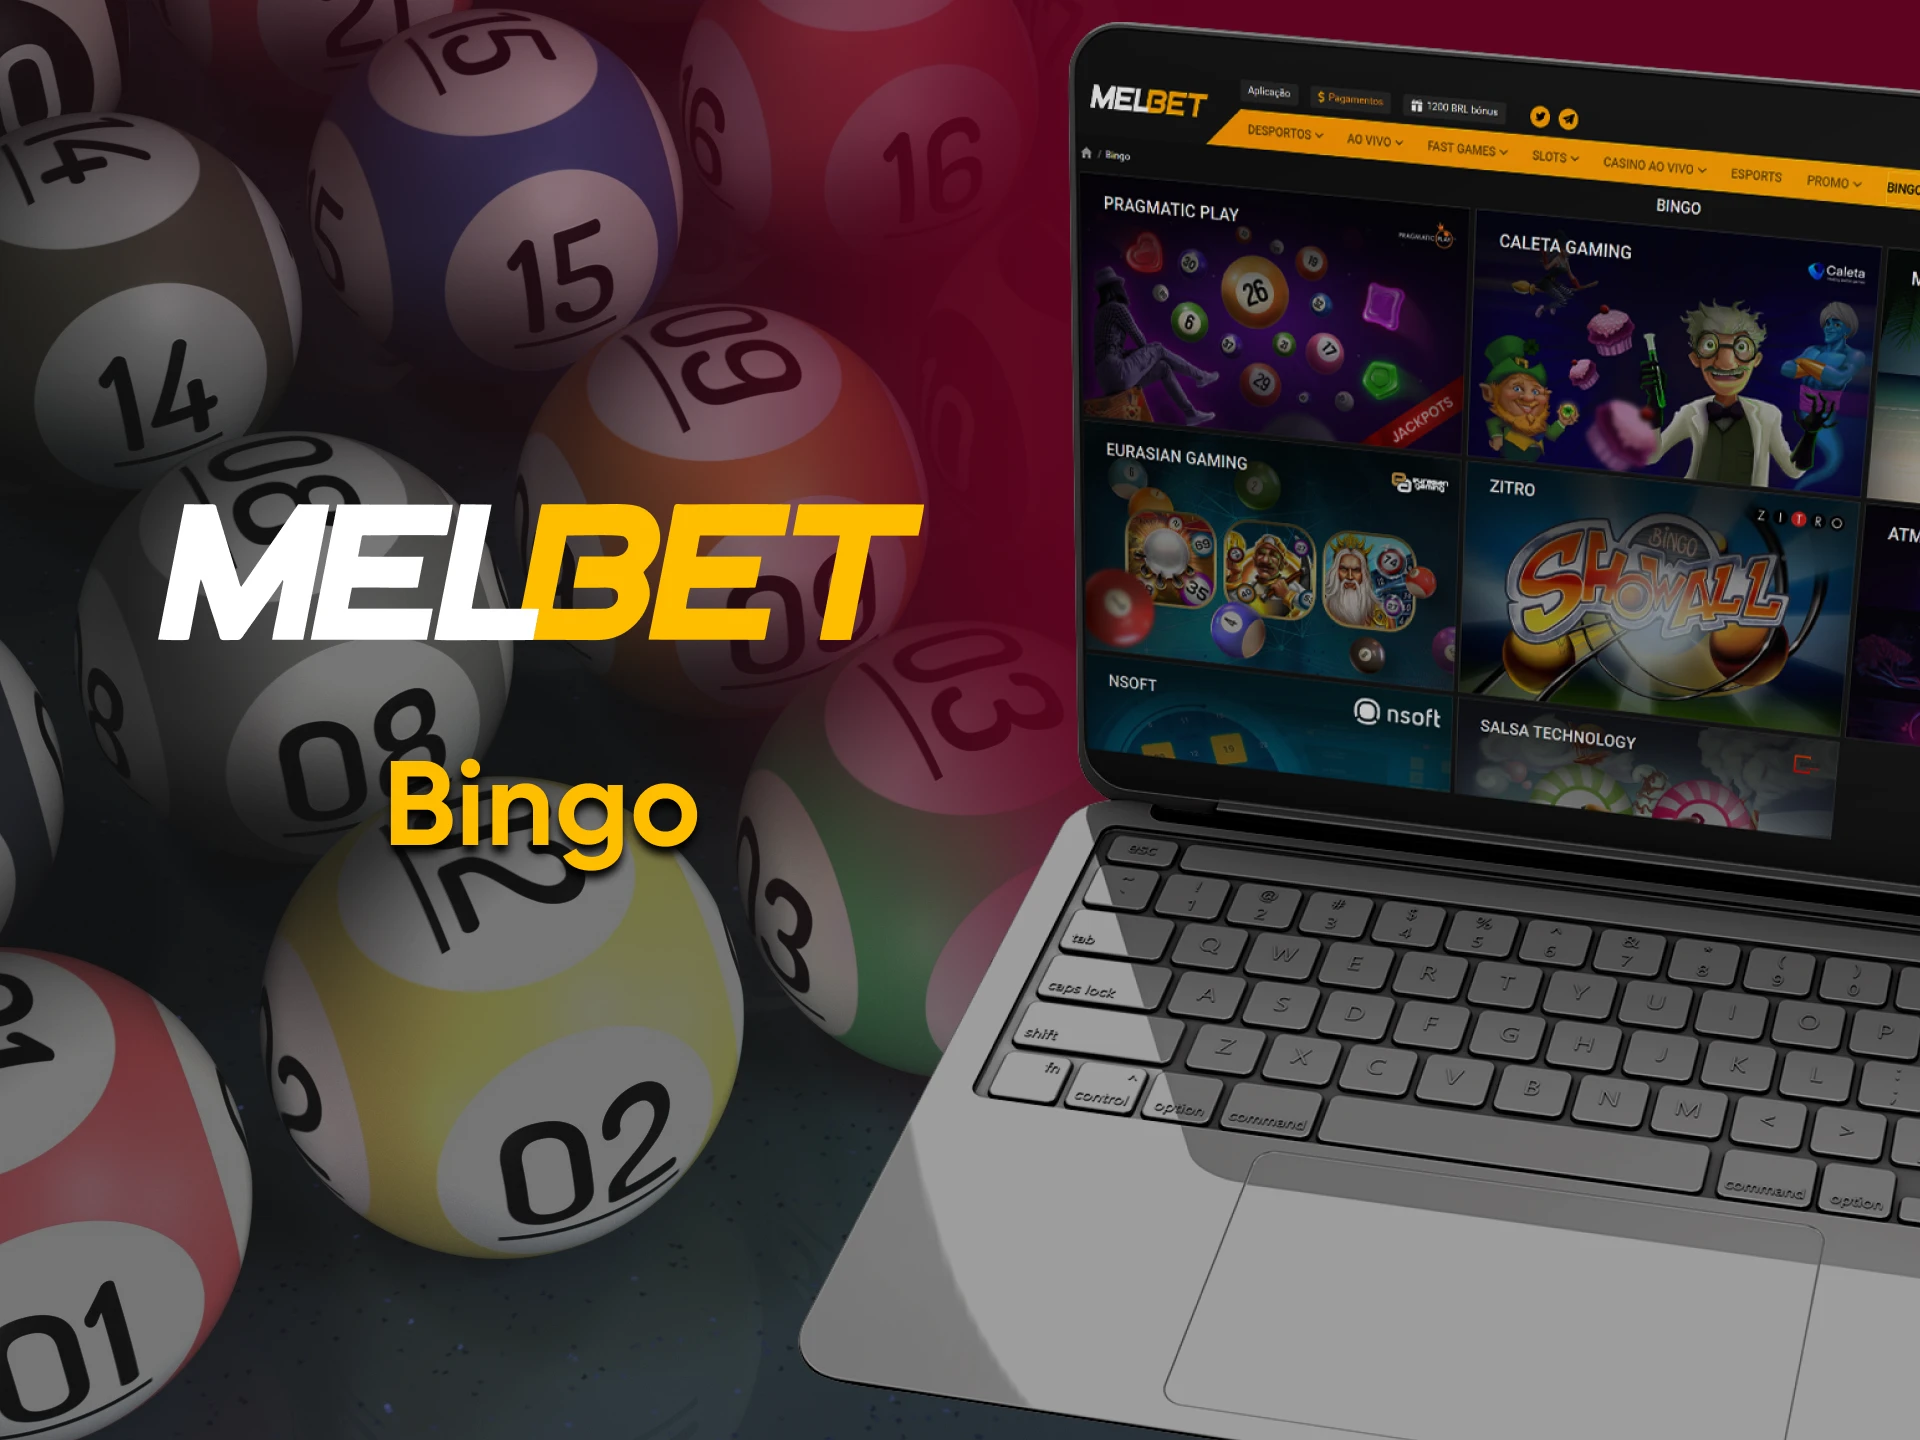 Para jogos no Melbet, escolha Bingo.